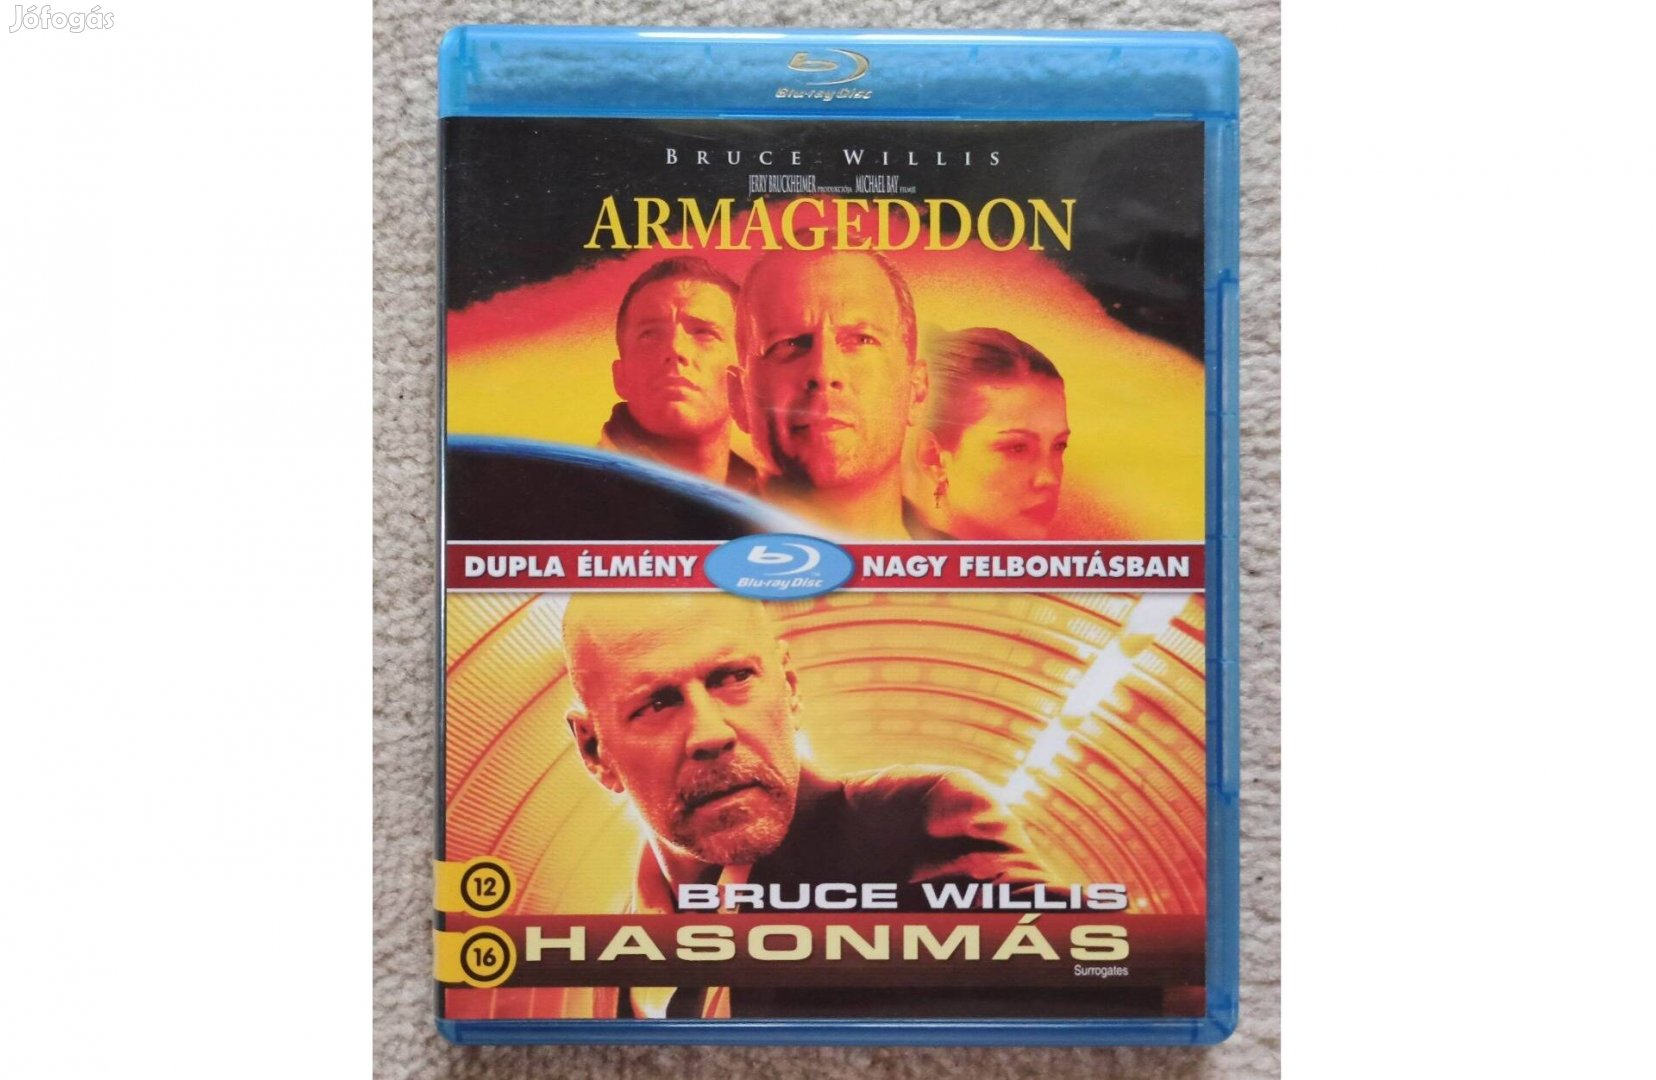 Armageddon/Hasonmás blu-ray blu ray filmek